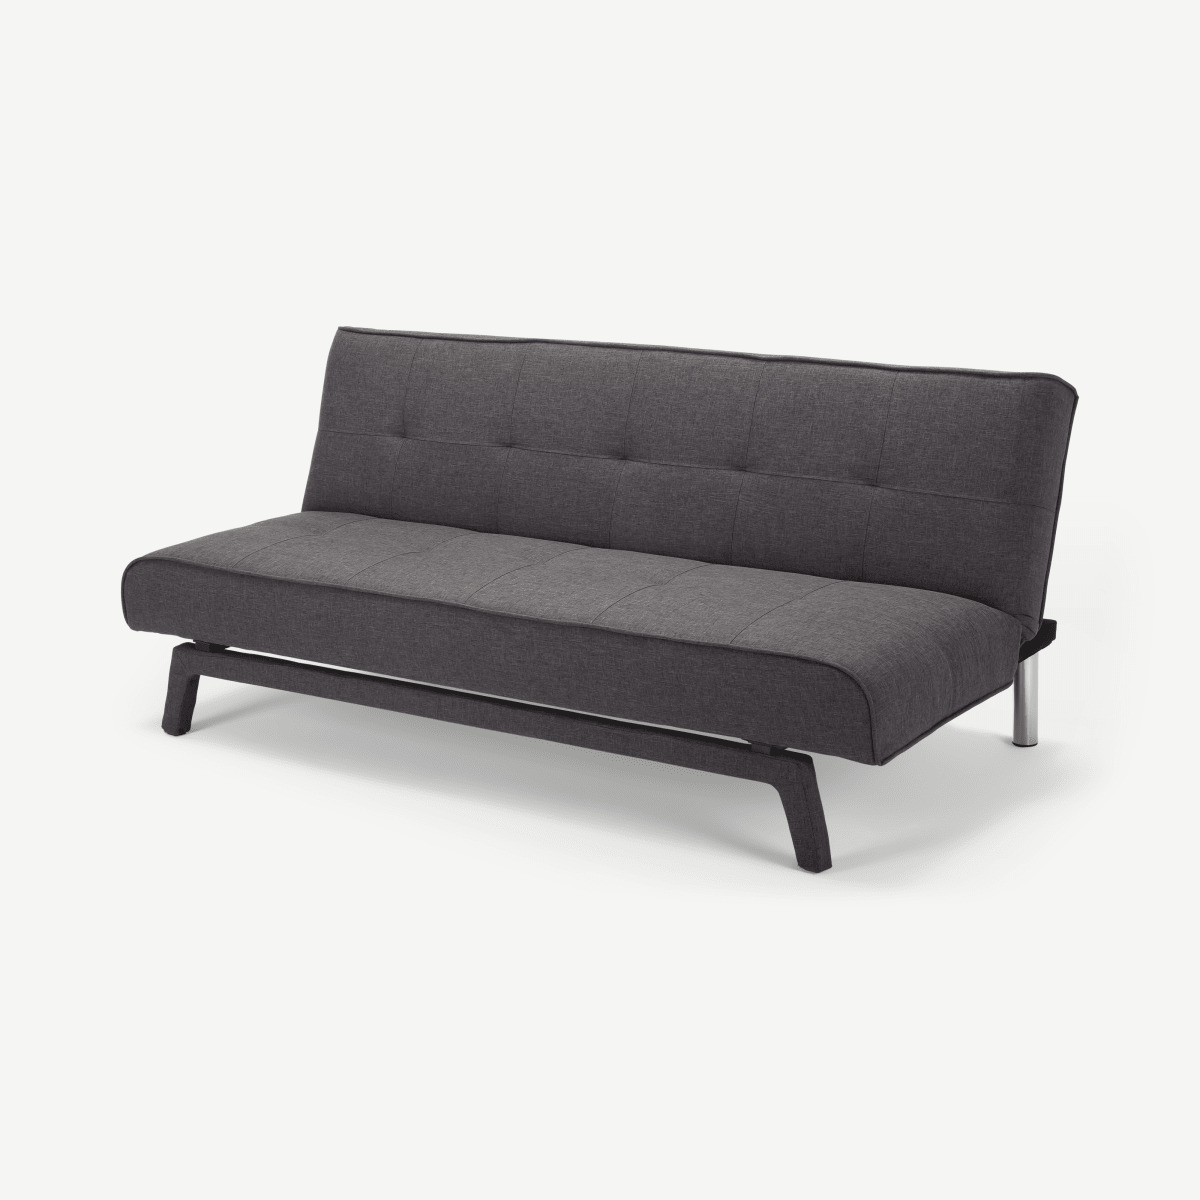 Yoko Click Clack Sofa Bed, Cygnet Grey Weave